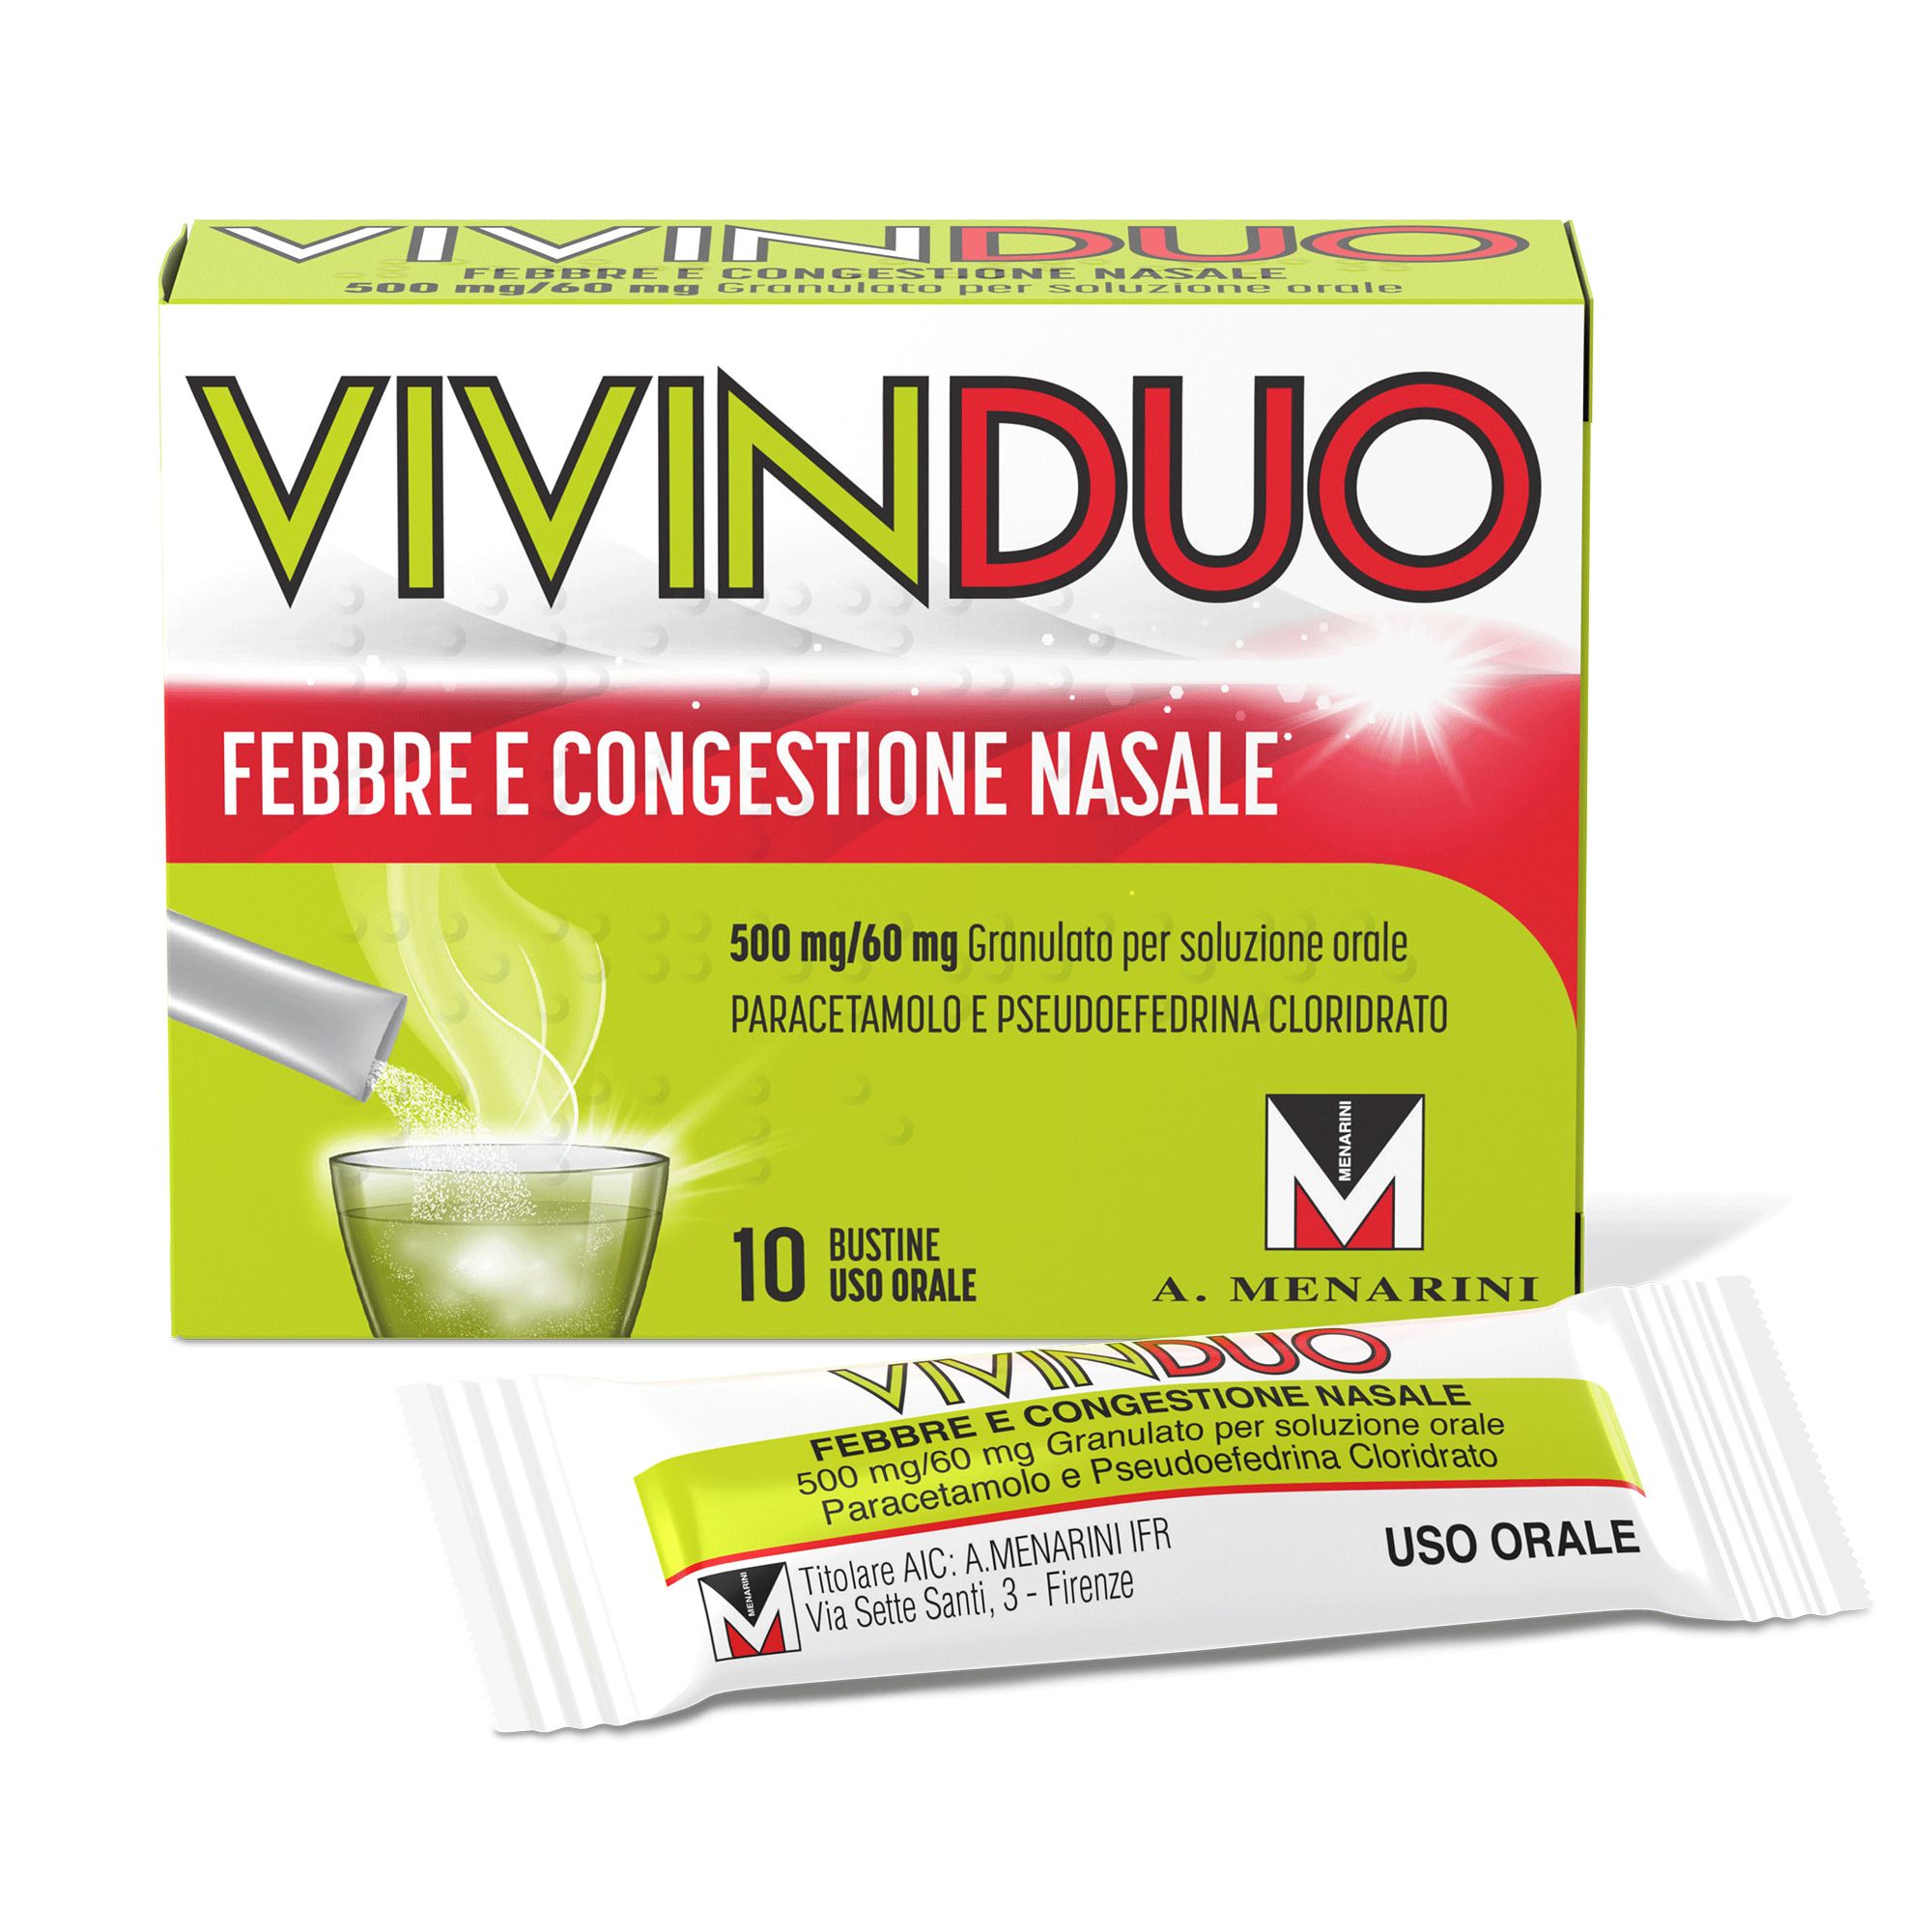 Image of VivinDuo Febbre e Congestione Nasale, con Paracetamolo, 10 Bustine